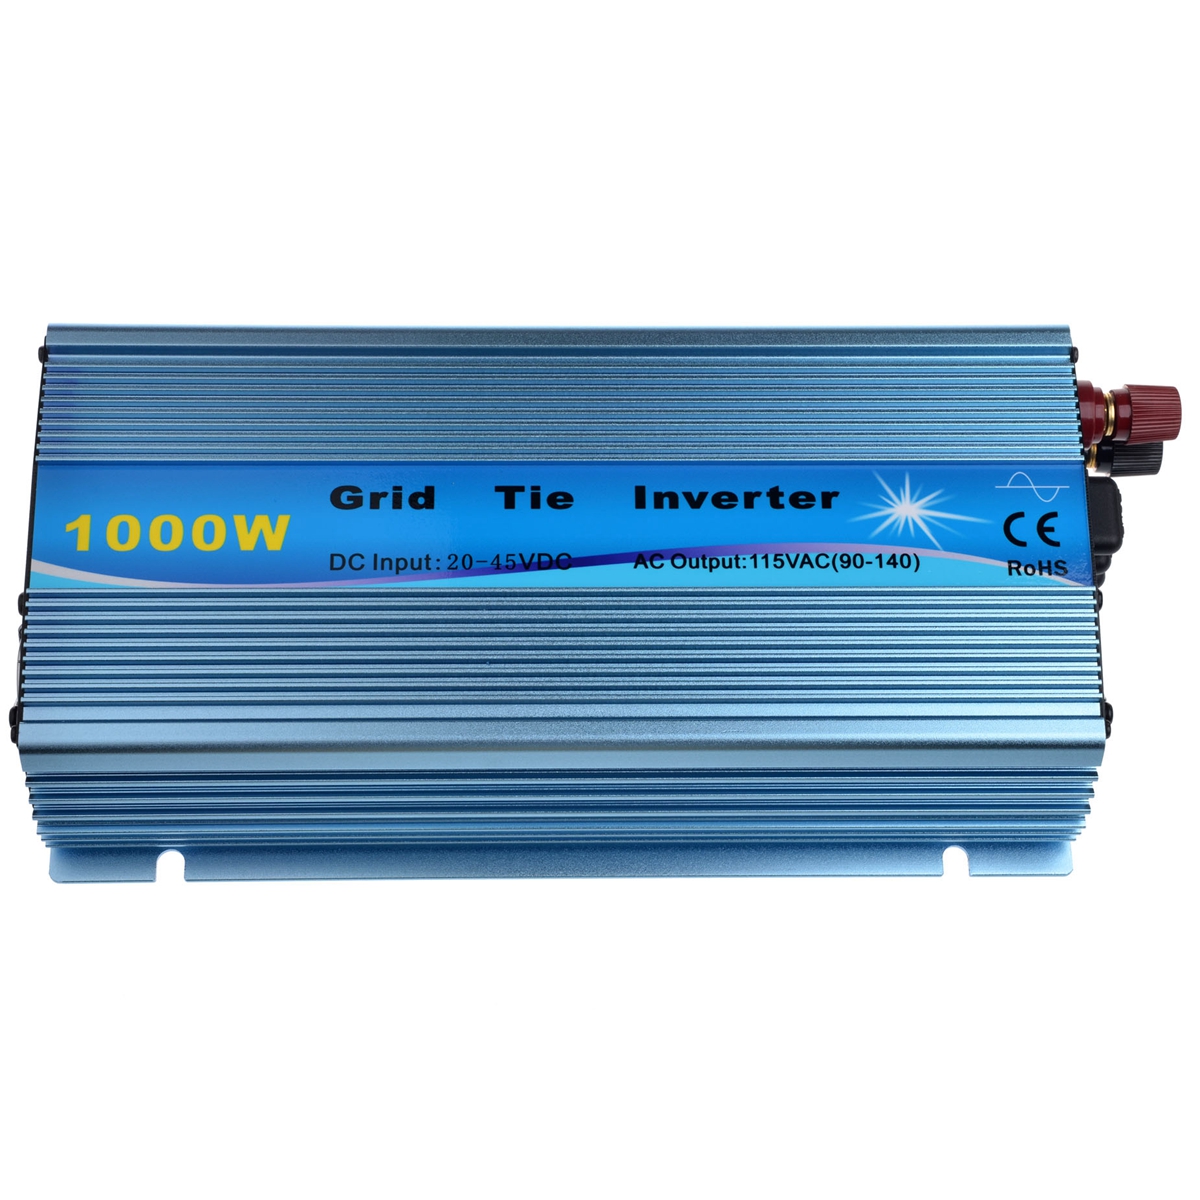 1000W-Solar-Grid-Tie-Inverter-DC18V--DC2436V-to-AC110V220V-MPPT-Pure-Sine-Wave-Inverter-50Hz60Hz-1454241-8